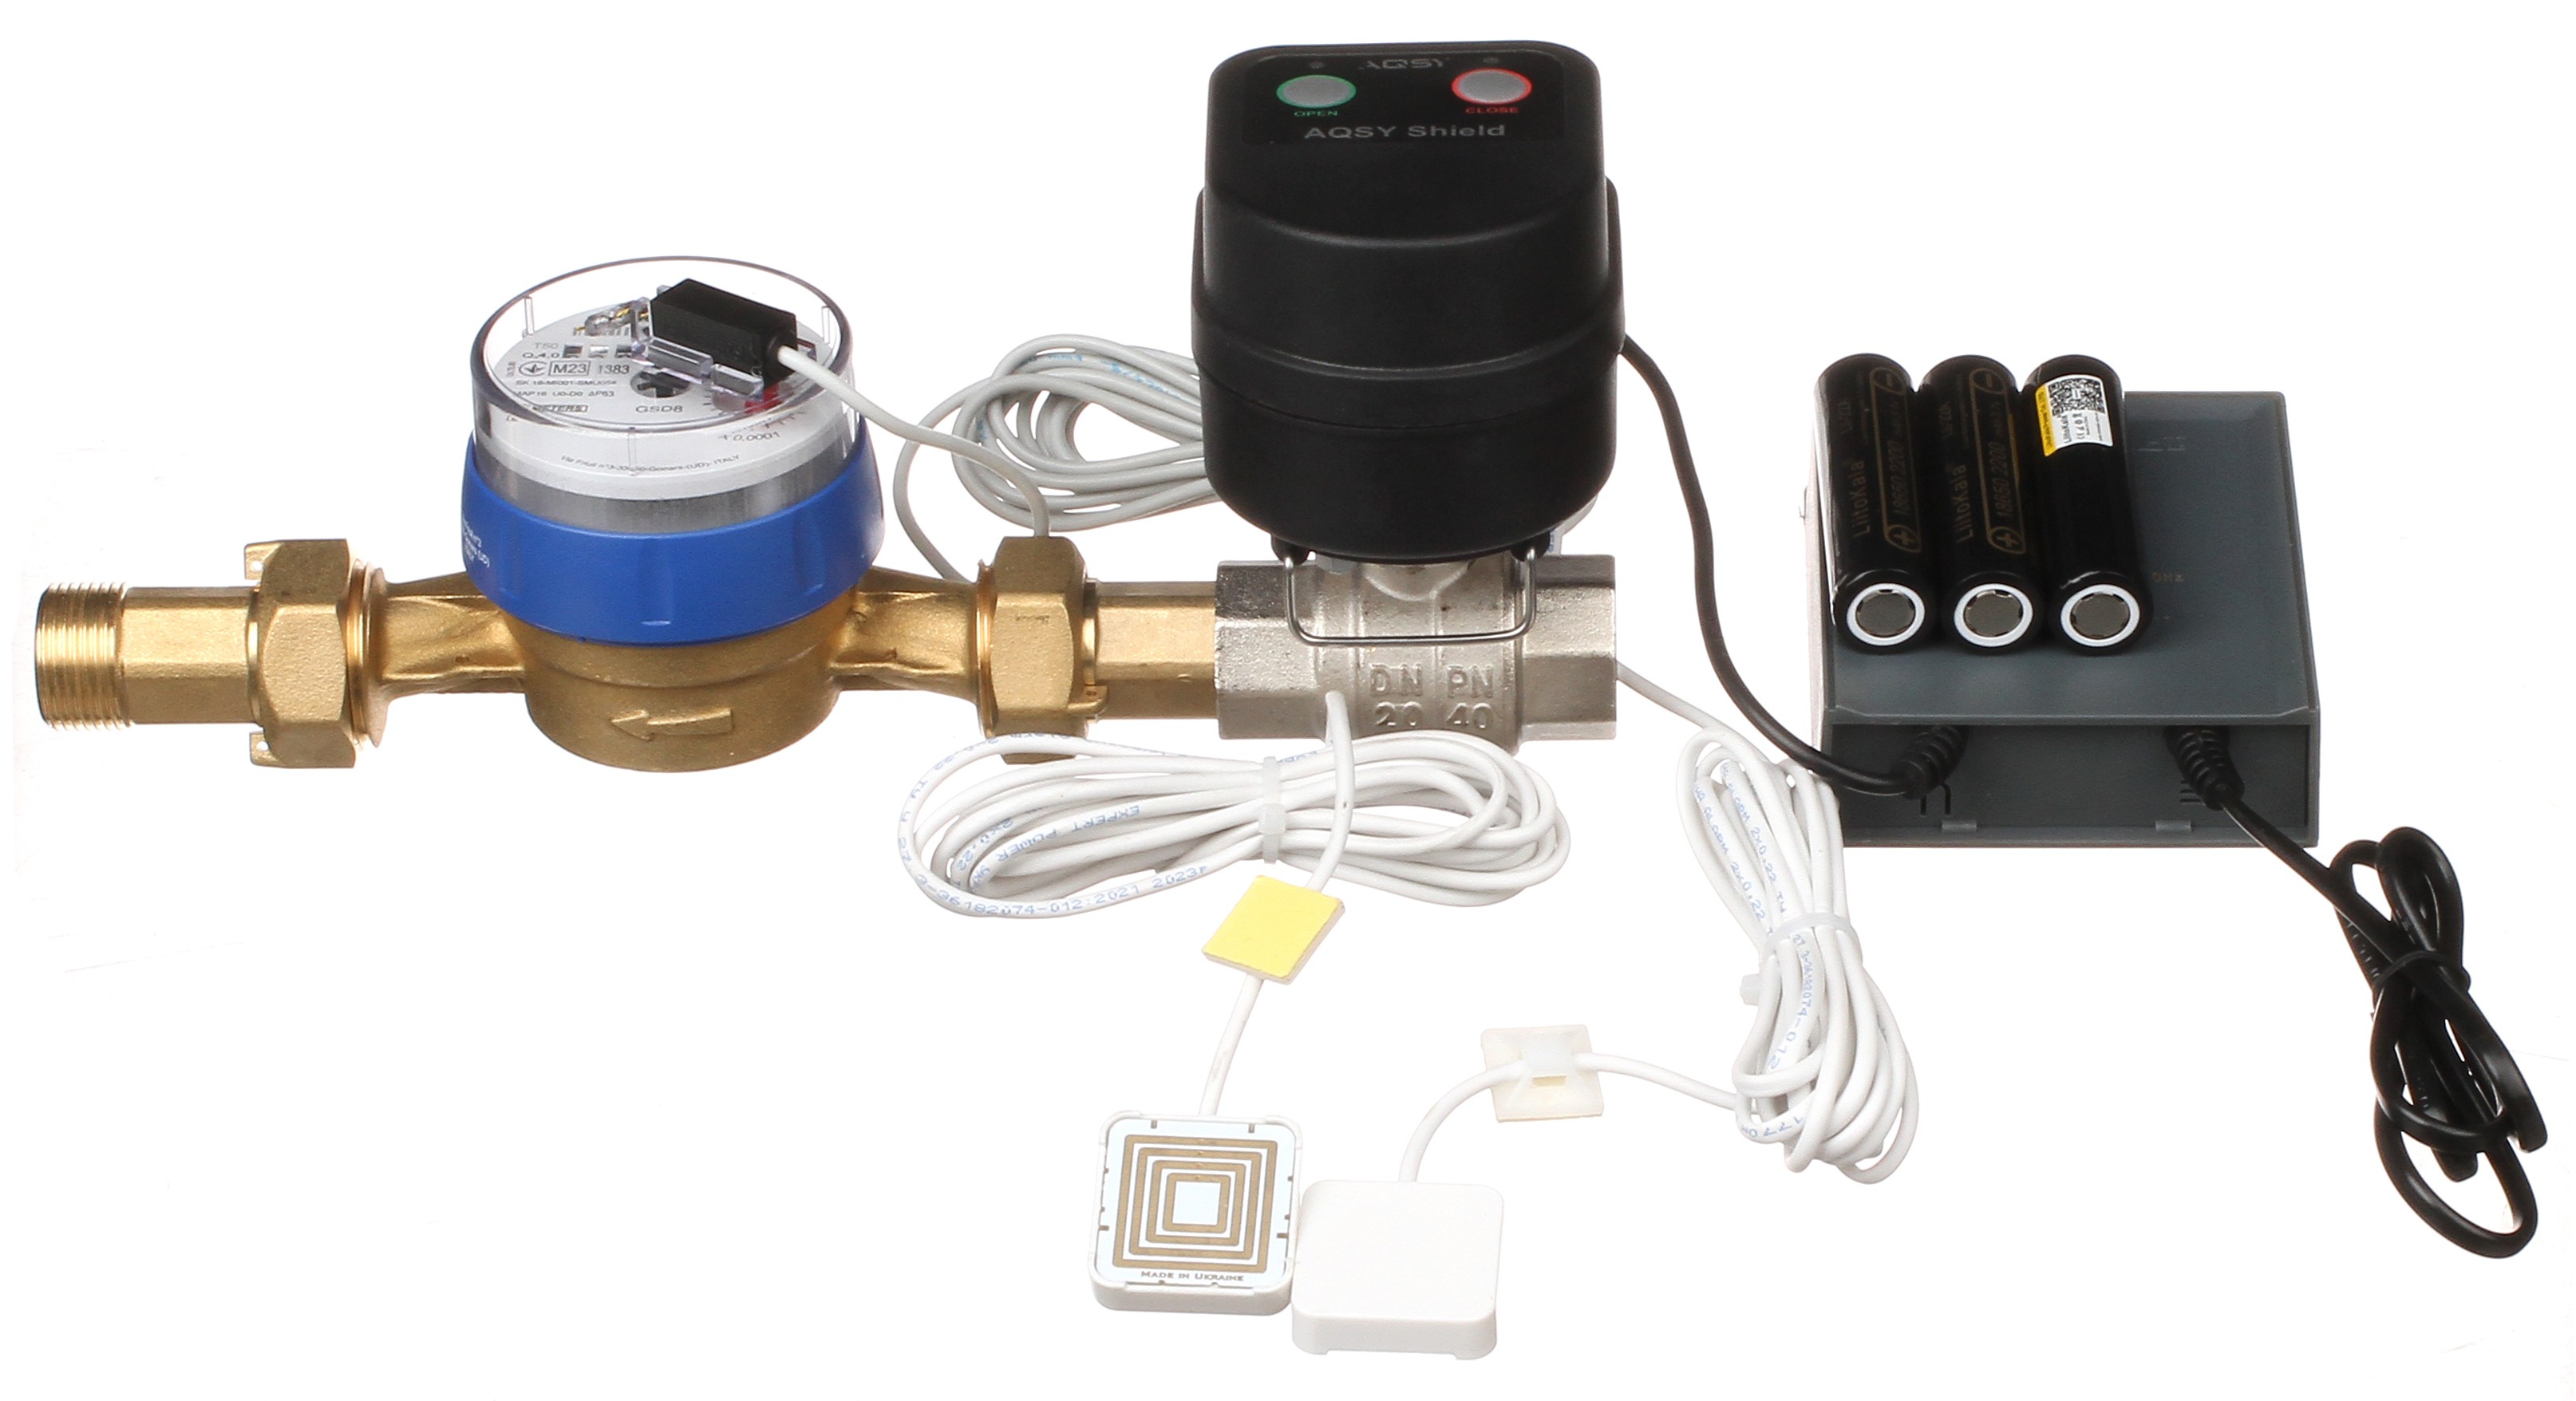 Система защиты от протечек воды  AQSY Shield 1/2 Enolgas со счетчиком и ИБП + два датчика AQSY WS Simple 3м отзывы - изображения 5